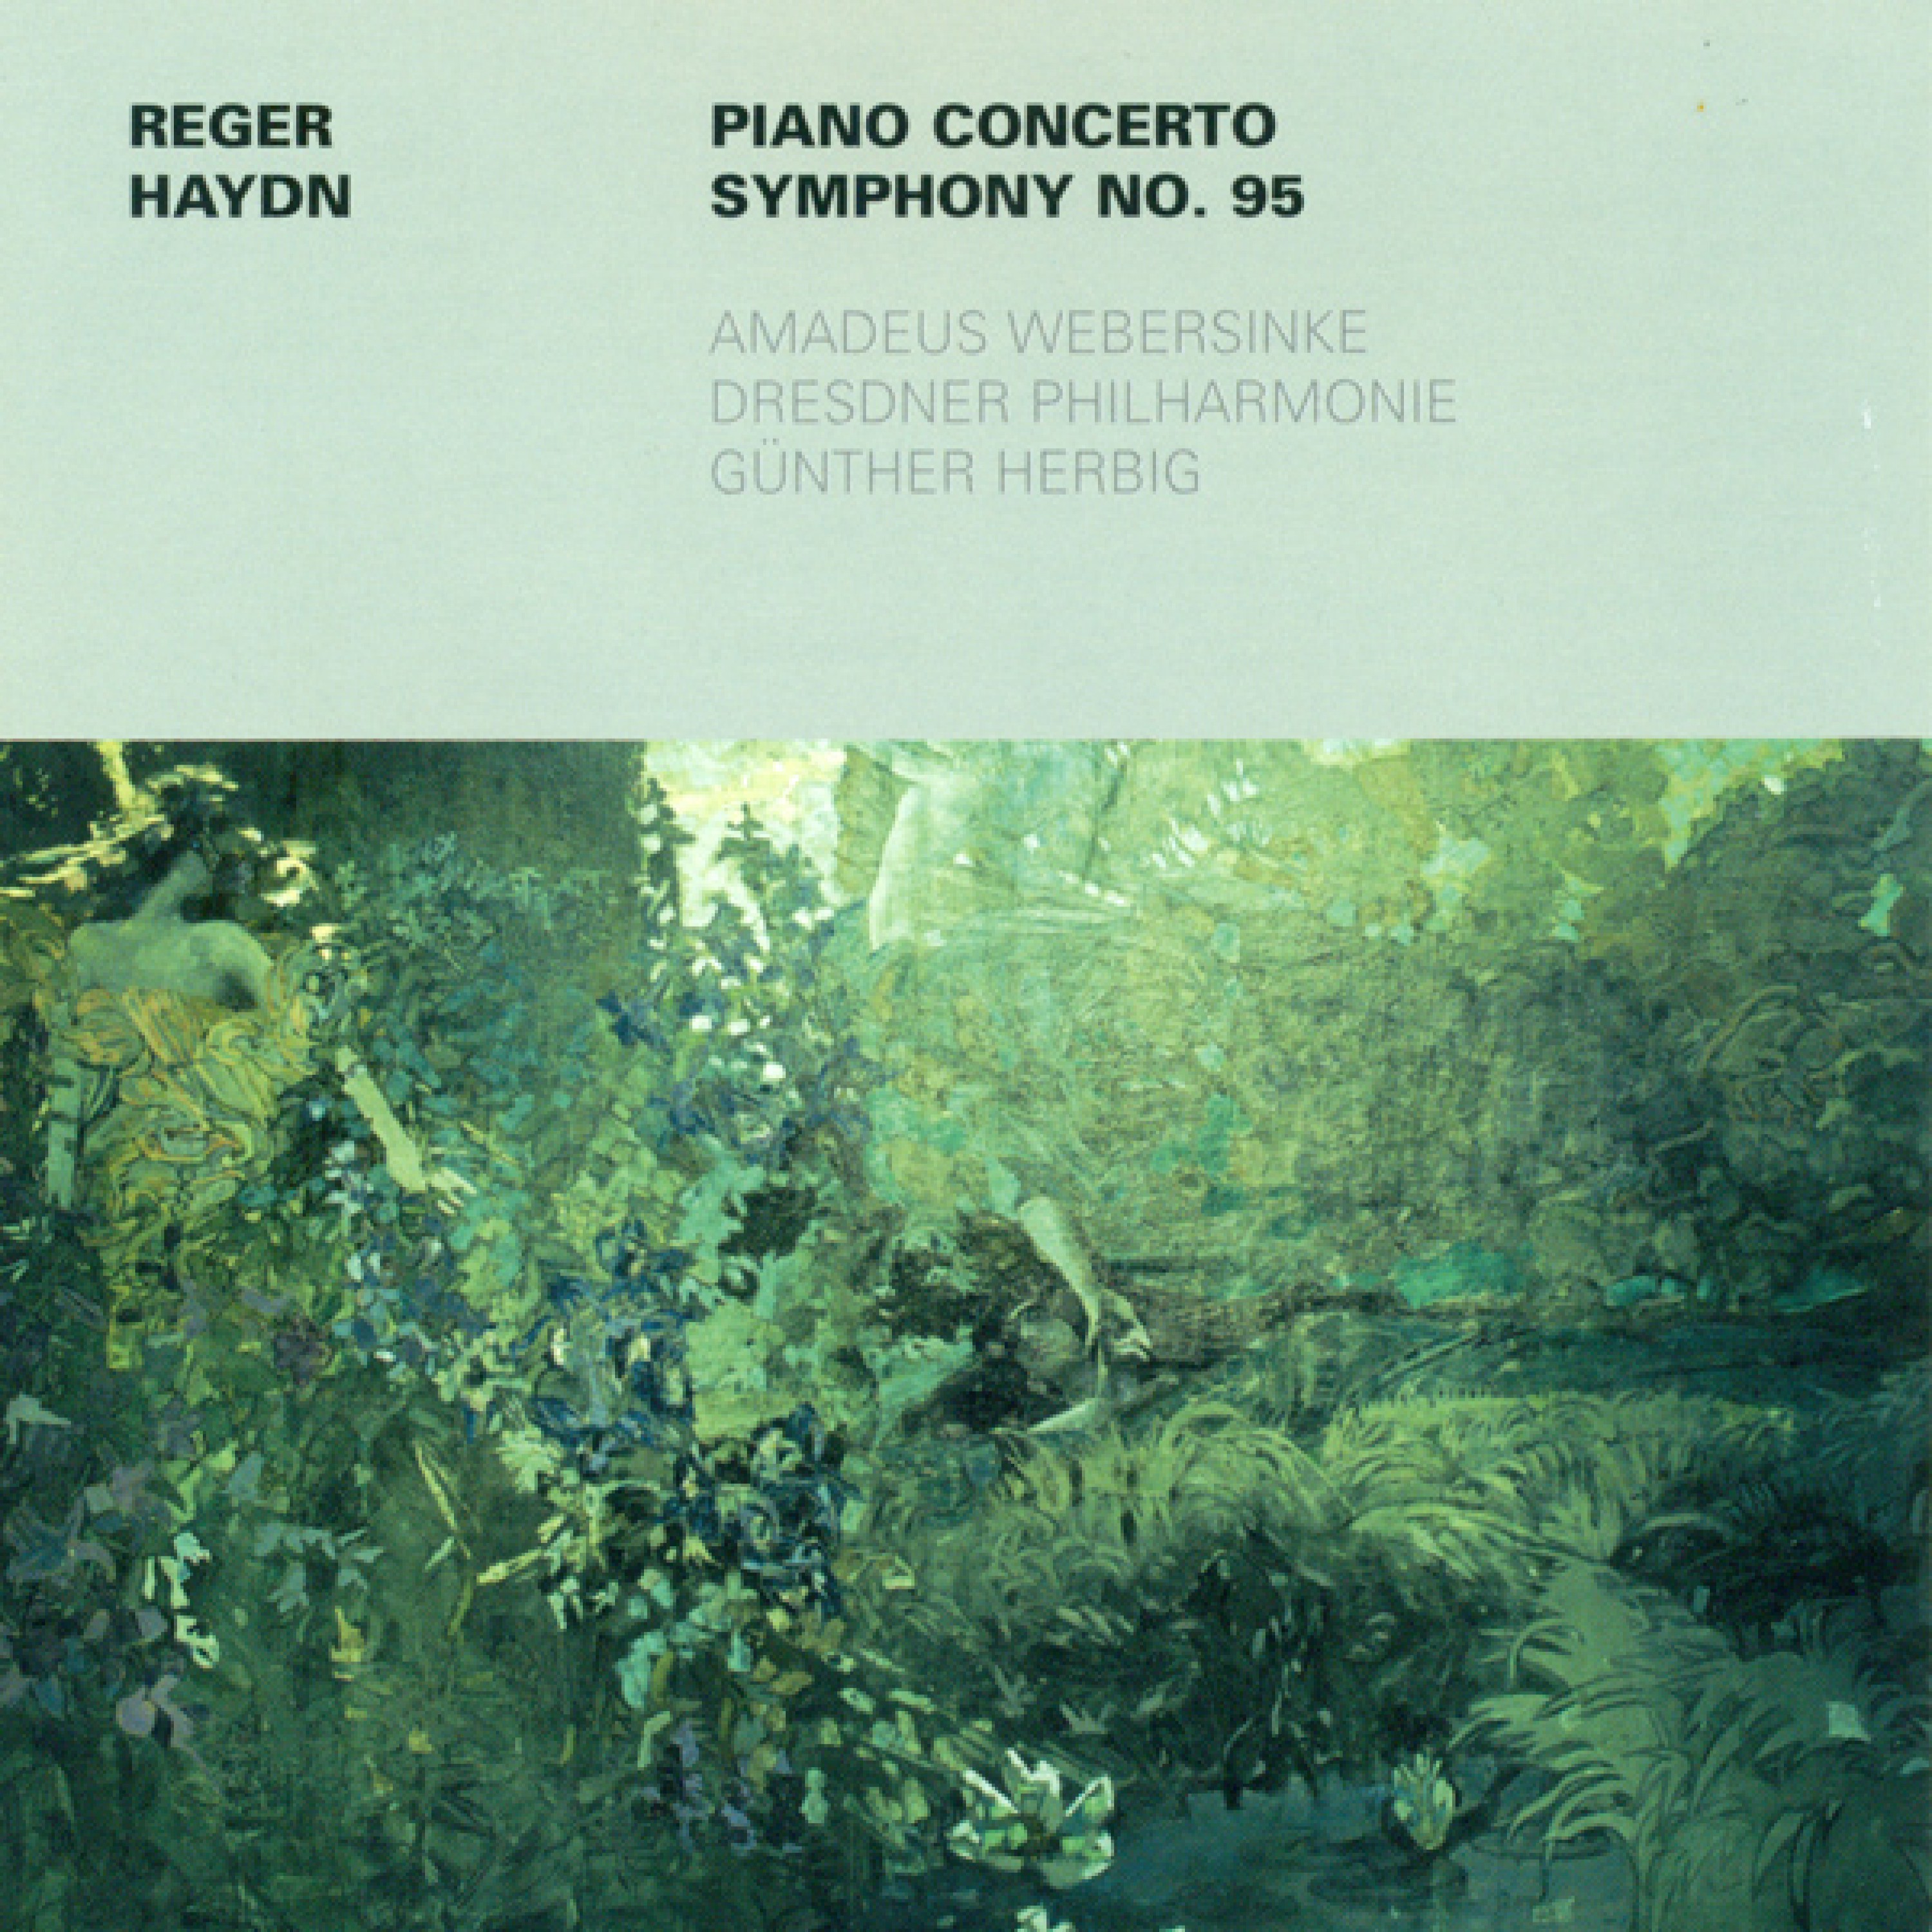 Piano Concerto in F Minor, Op. 114: I. Allegro moderato